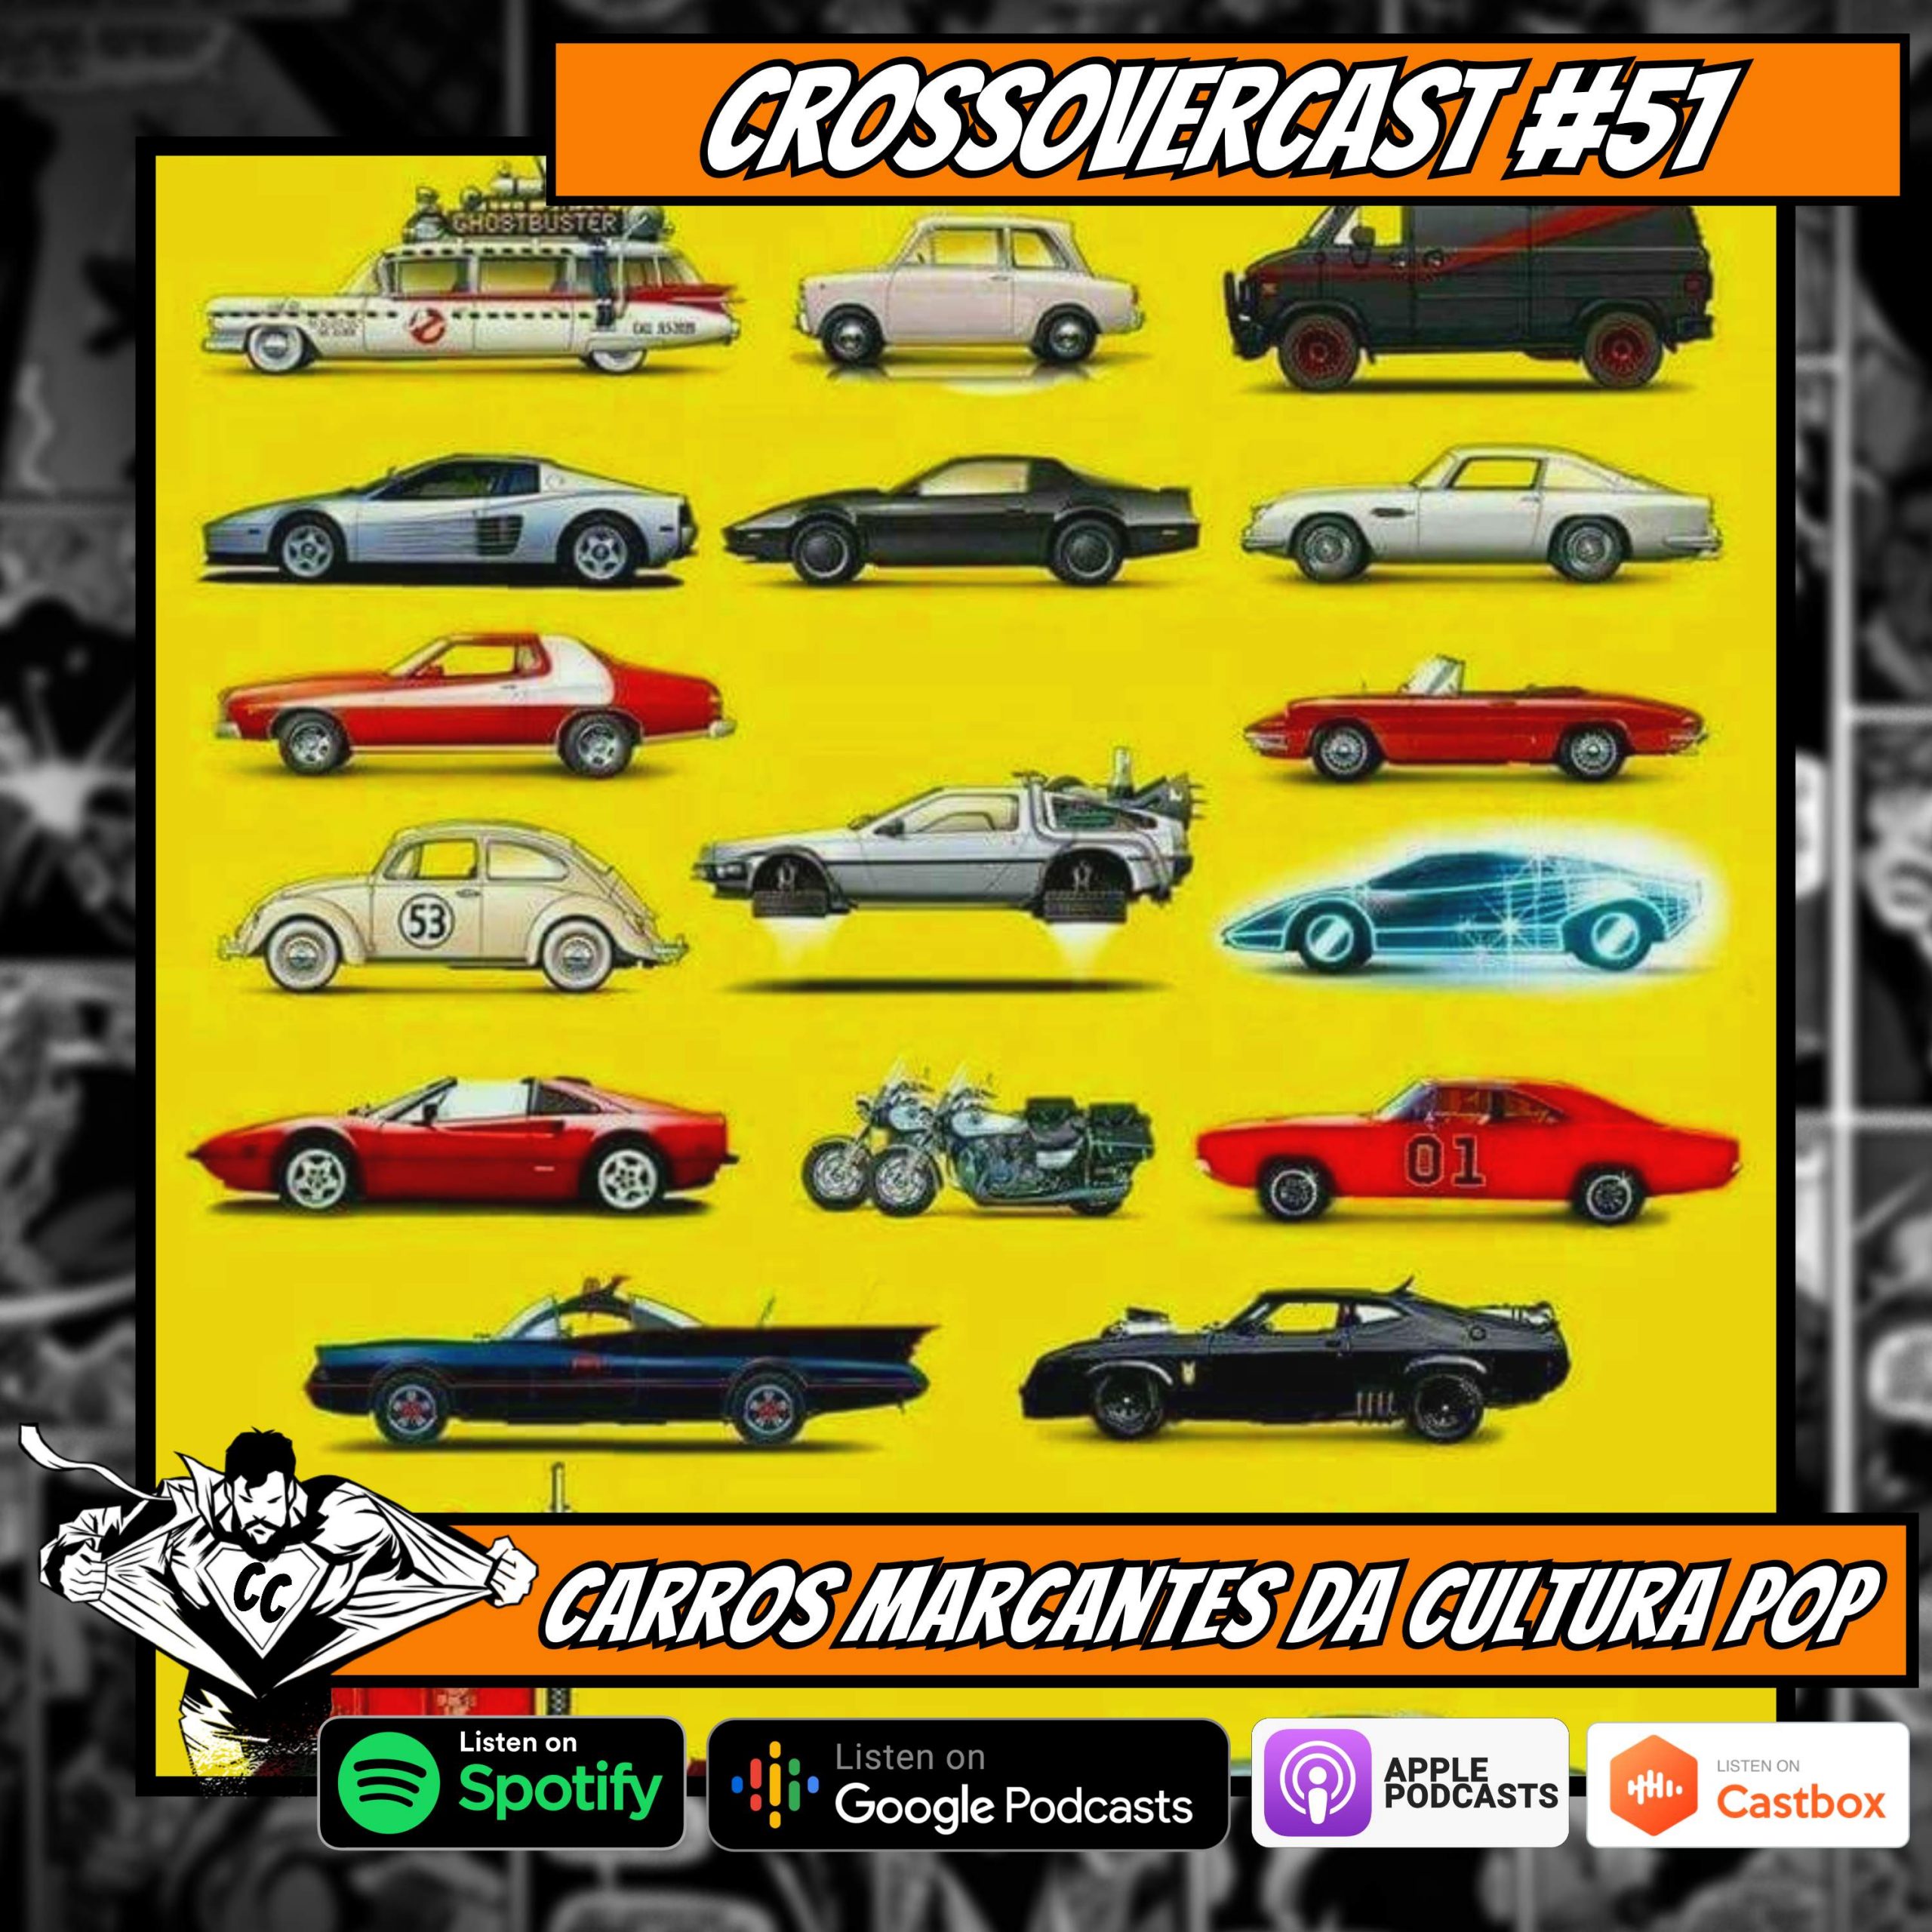 CrossoverCast 51 – Carros Marcantes da Cultura Pop